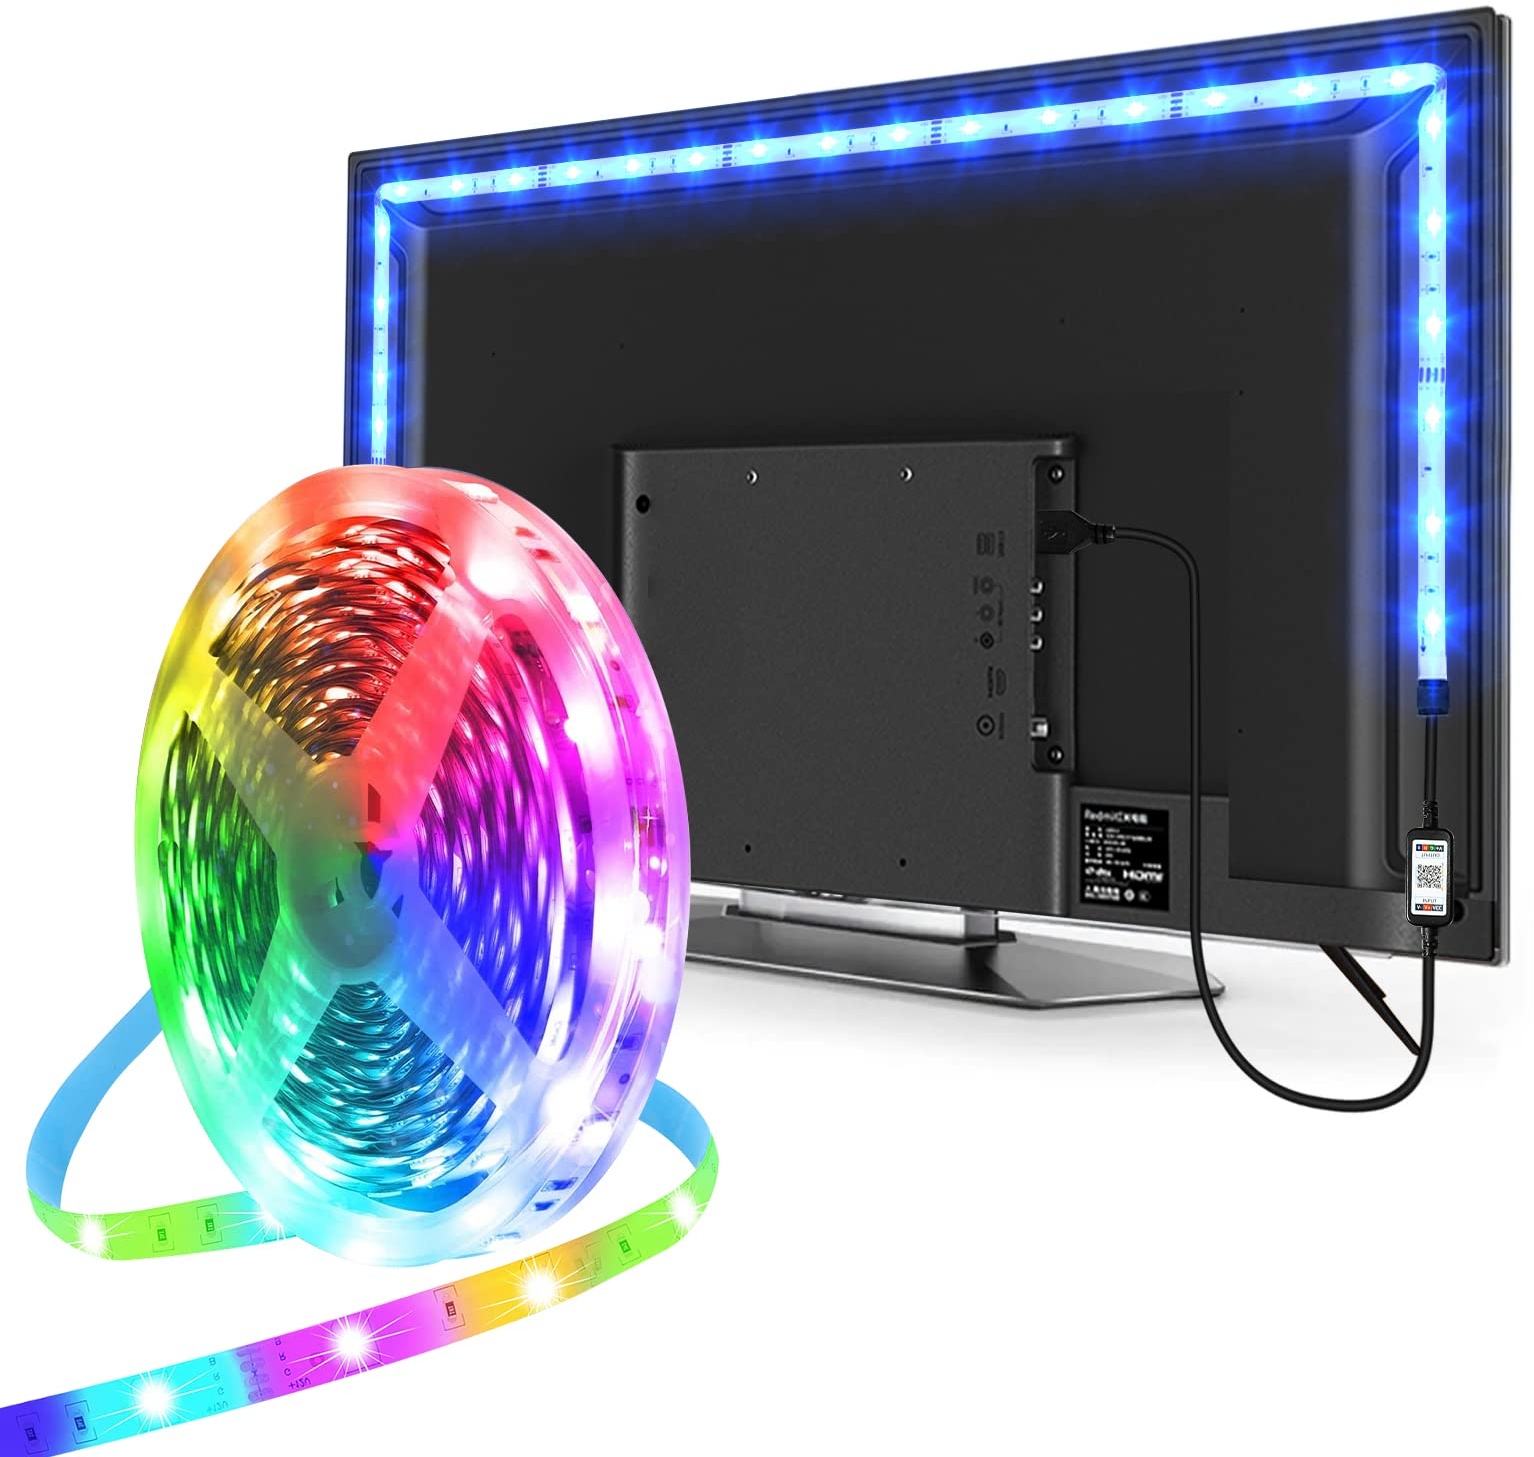 LED Strip 5m, USB Led Beleuchtung Hintergrundbeleuchtung Fernseher für 65 bis 75 Zoll HDTV, TV-Bildschirm, PC-Monitor, Deko, Party, Steuerbar mit App, LED TV Hintergrundbeleuchtung Sync mit Musik